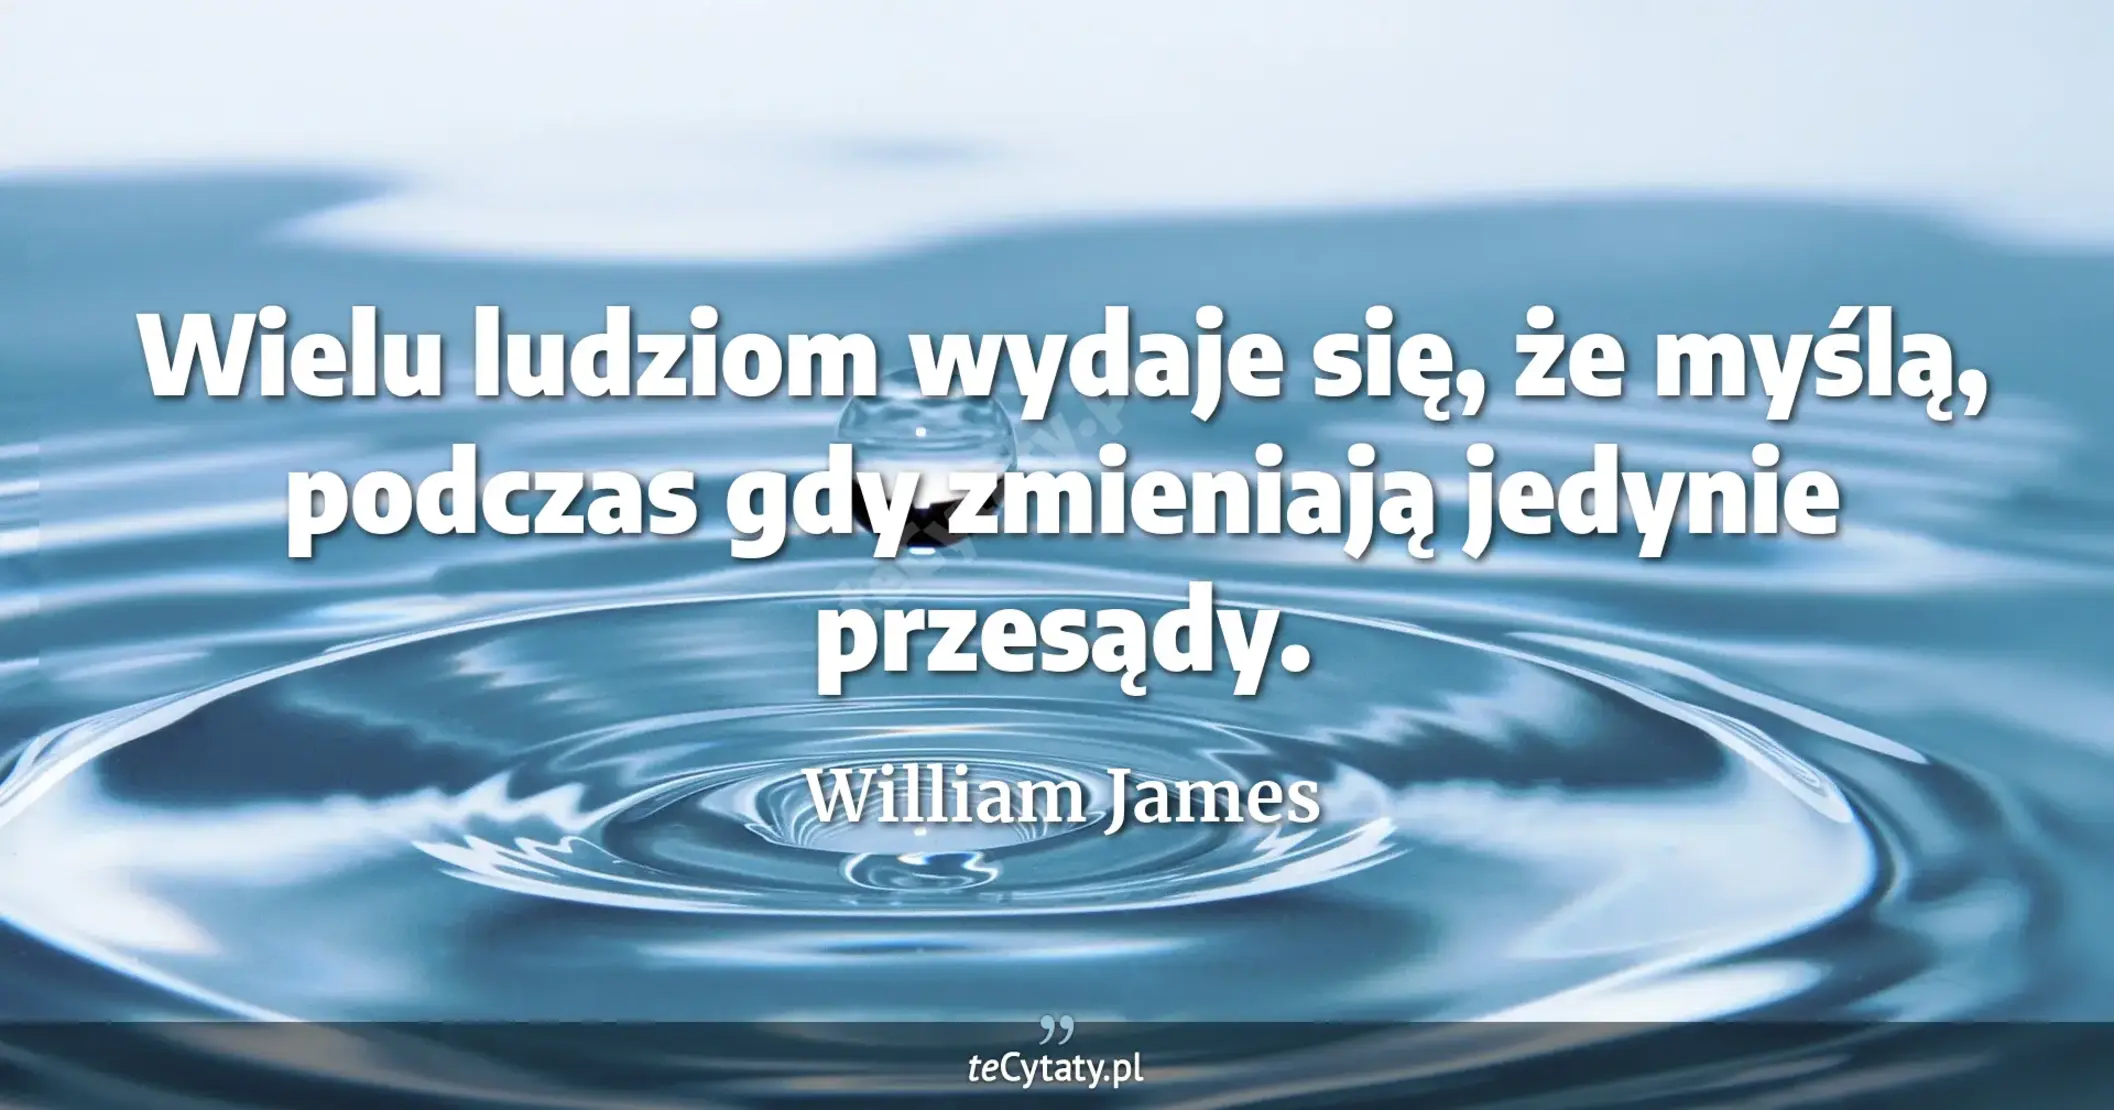 Wielu ludziom wydaje się, że myślą, podczas gdy zmieniają jedynie przesądy. - William James